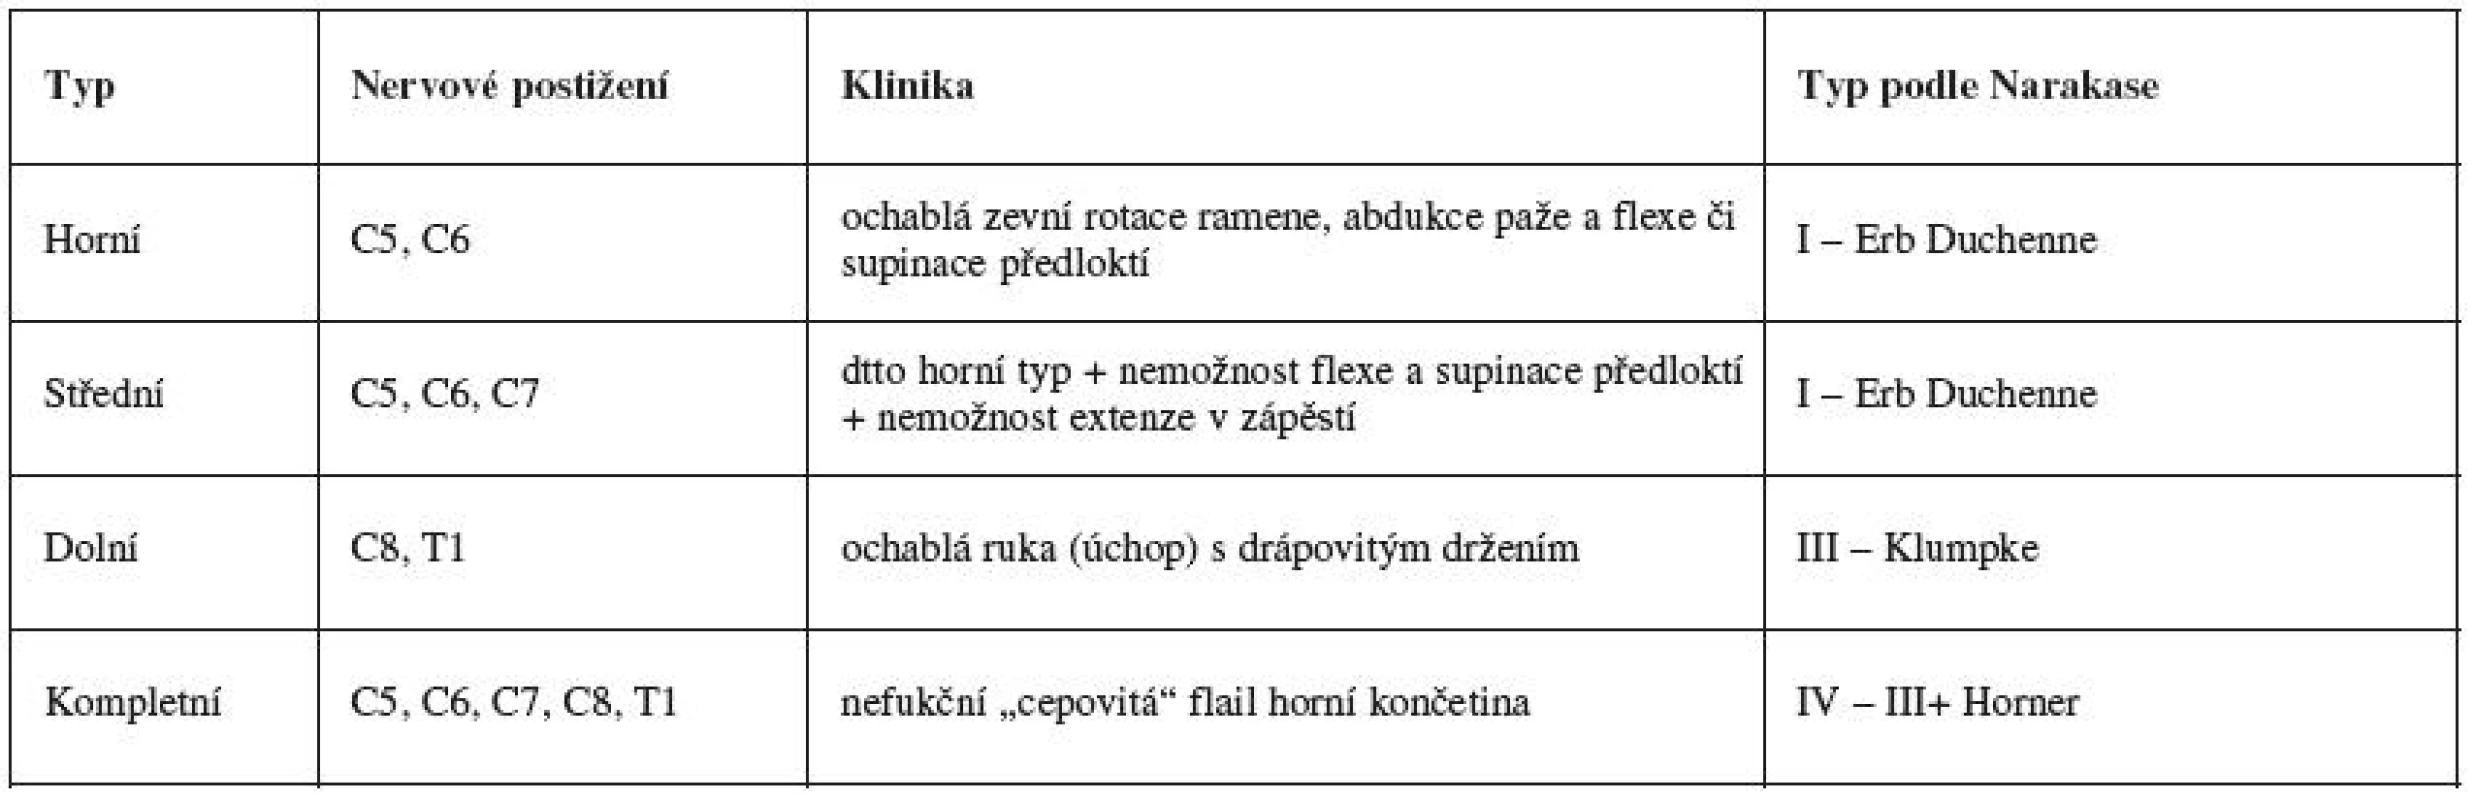 Klasifikace perinatální parézy brachiálního plexu